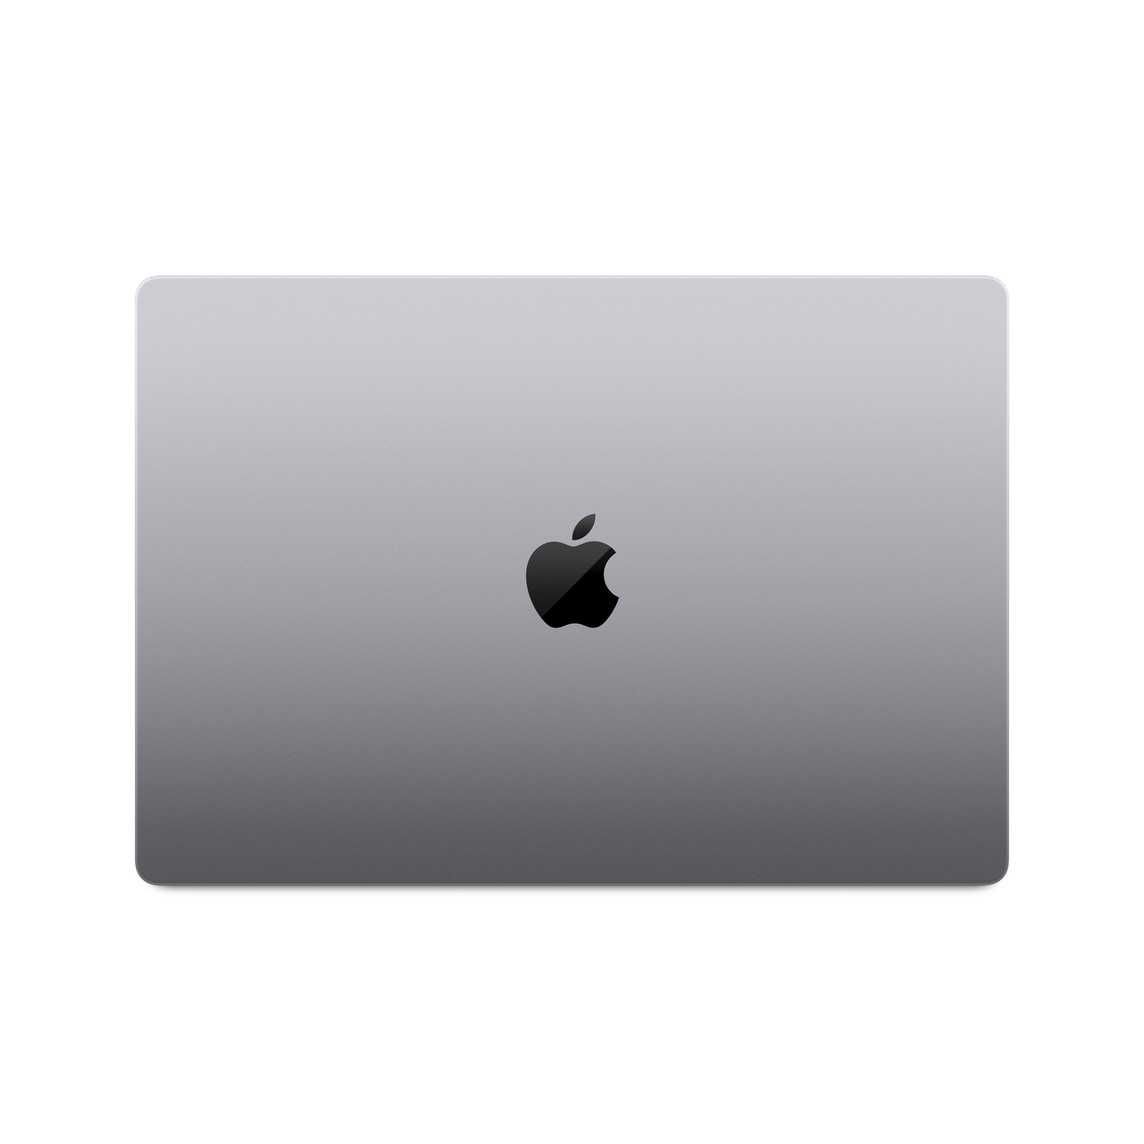 MacBook Pro Max M2 - Cores: 12 CPU|38 GPU|32 Neural, 32RAM, 1TB